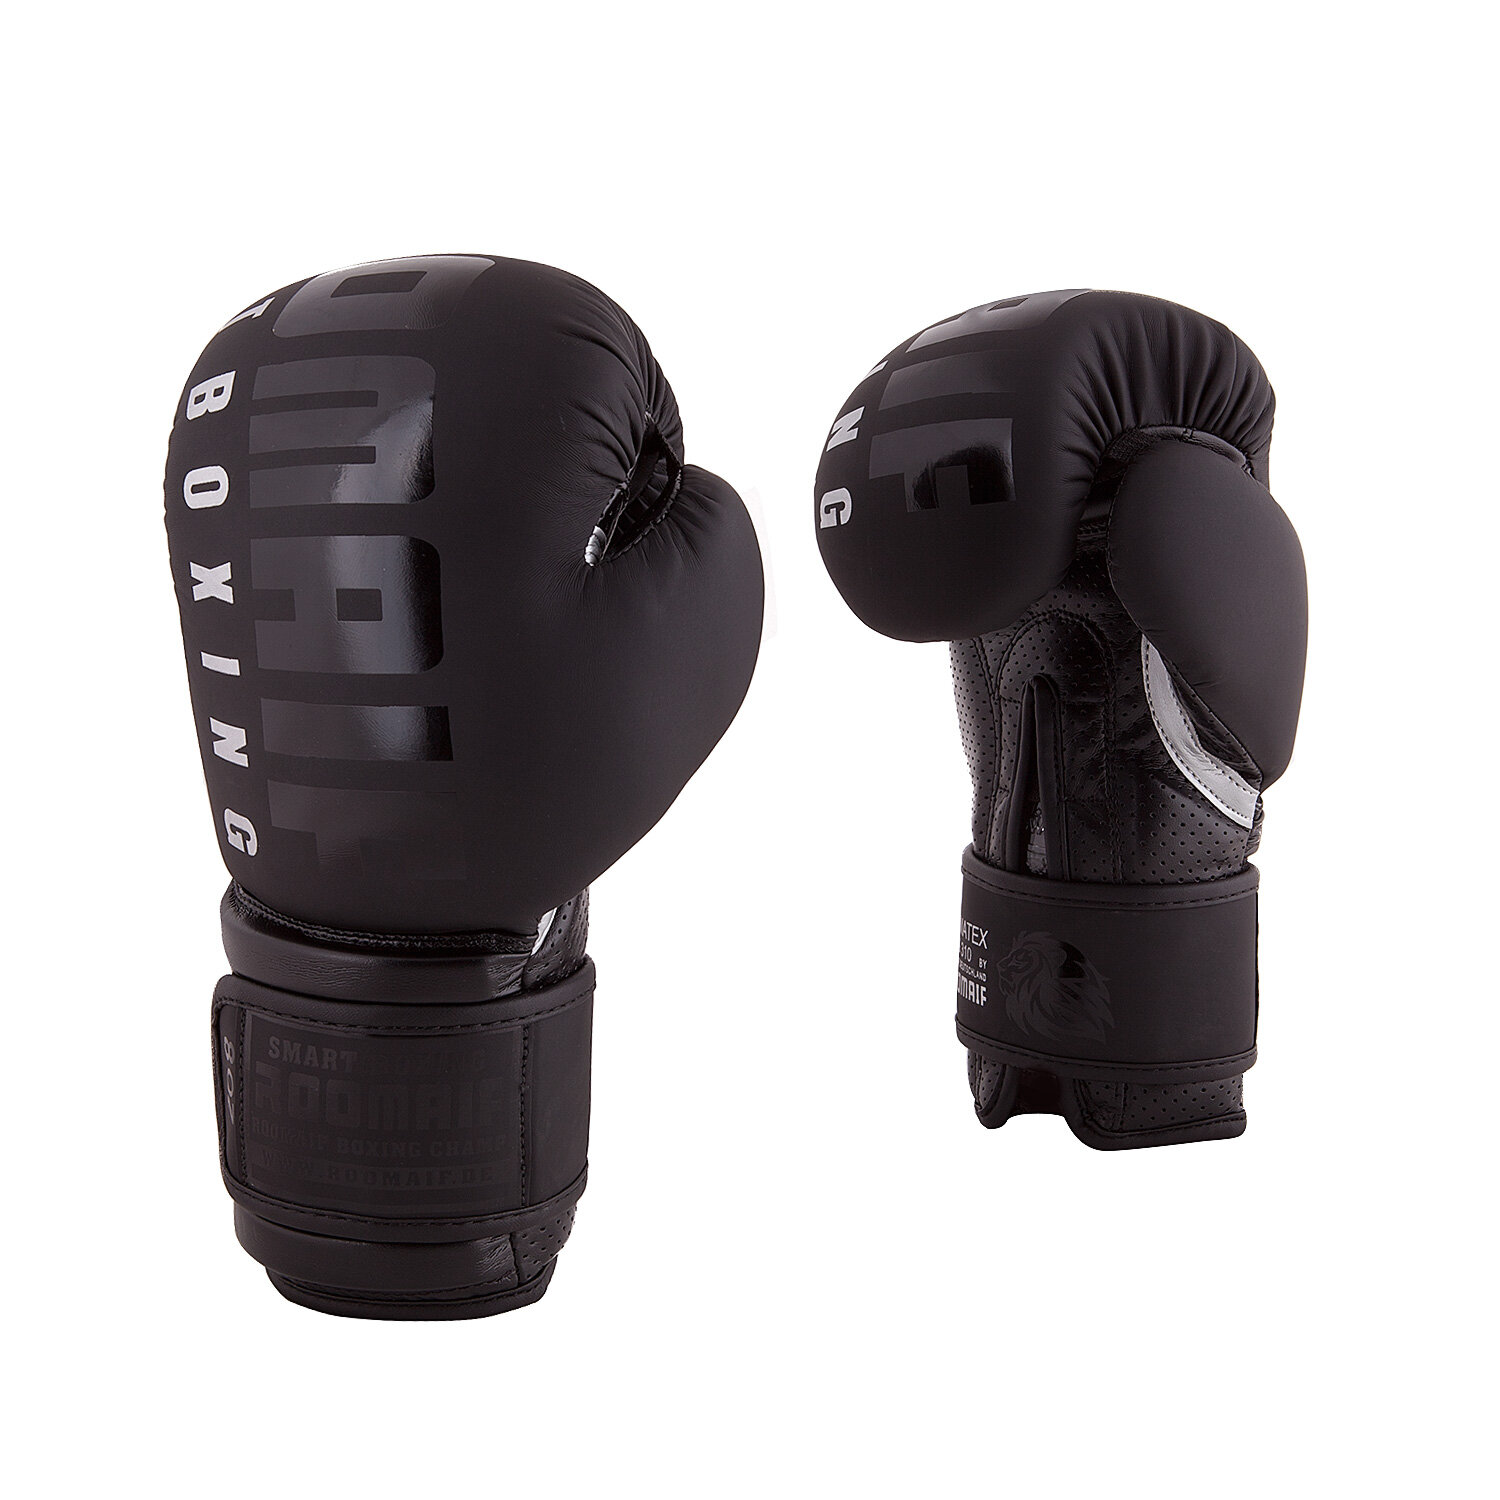 Боксерские перчатки Roomaif Rbg-310 Dx Black размер 14 oz